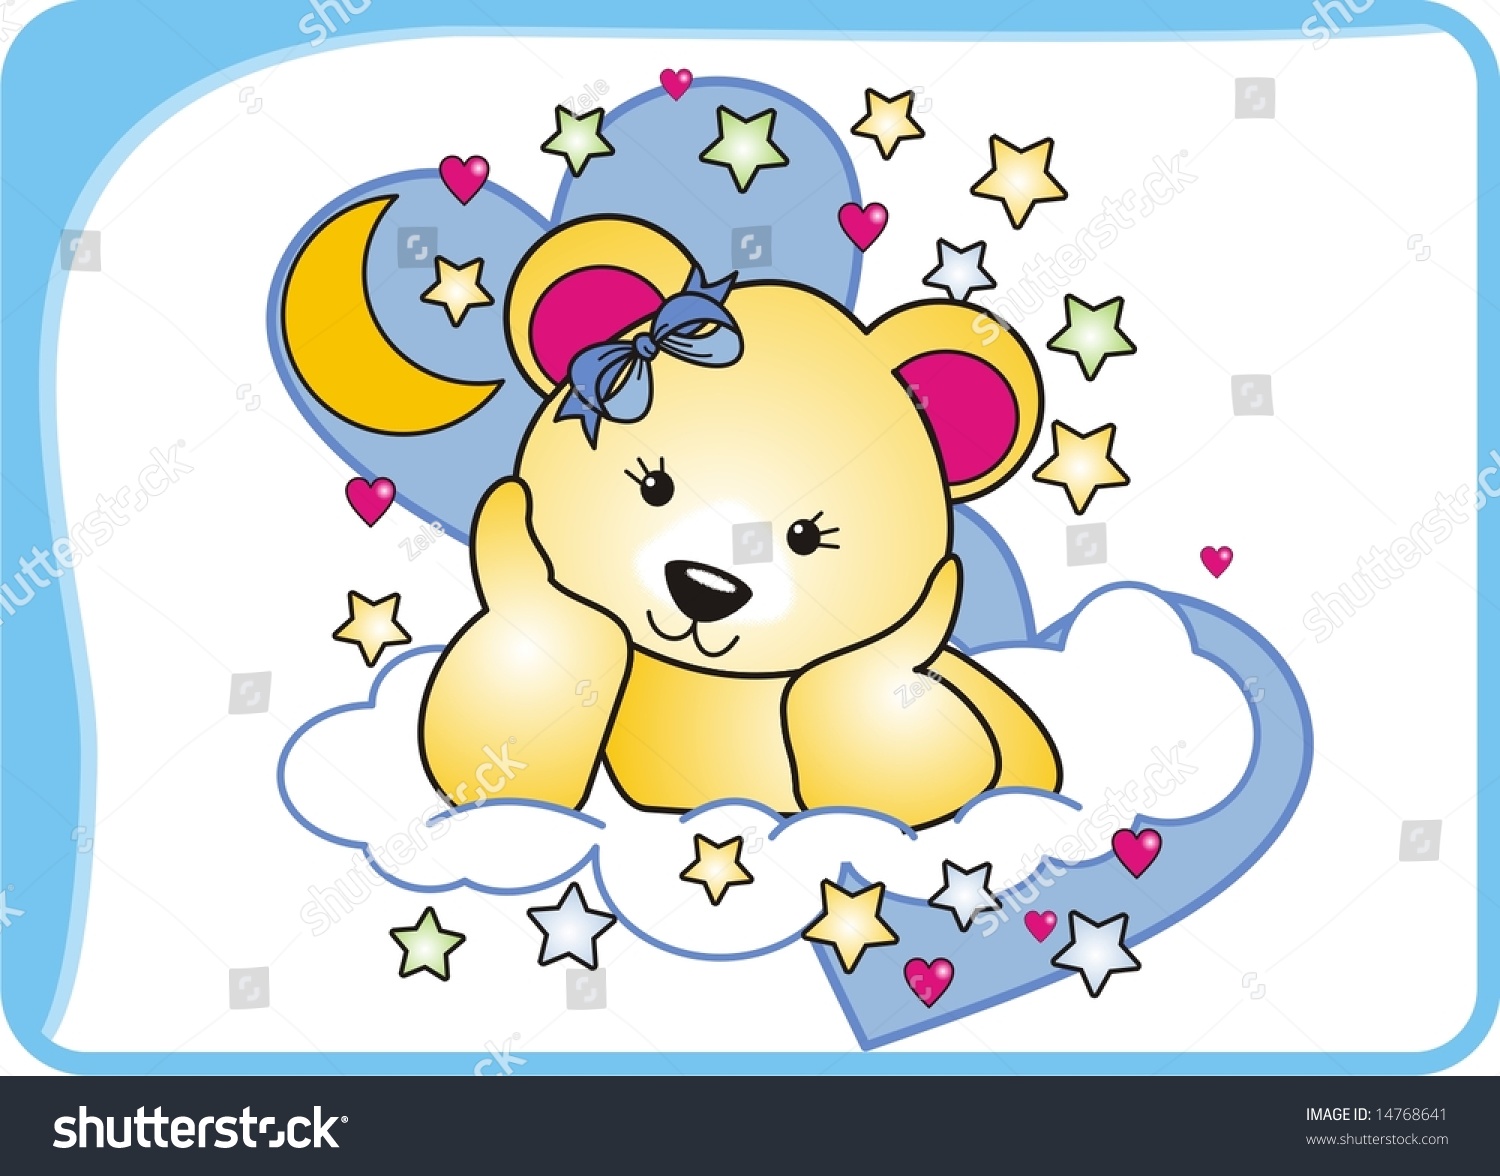 Good Night Stock Vector Illustration 14768641 : Shutterstock